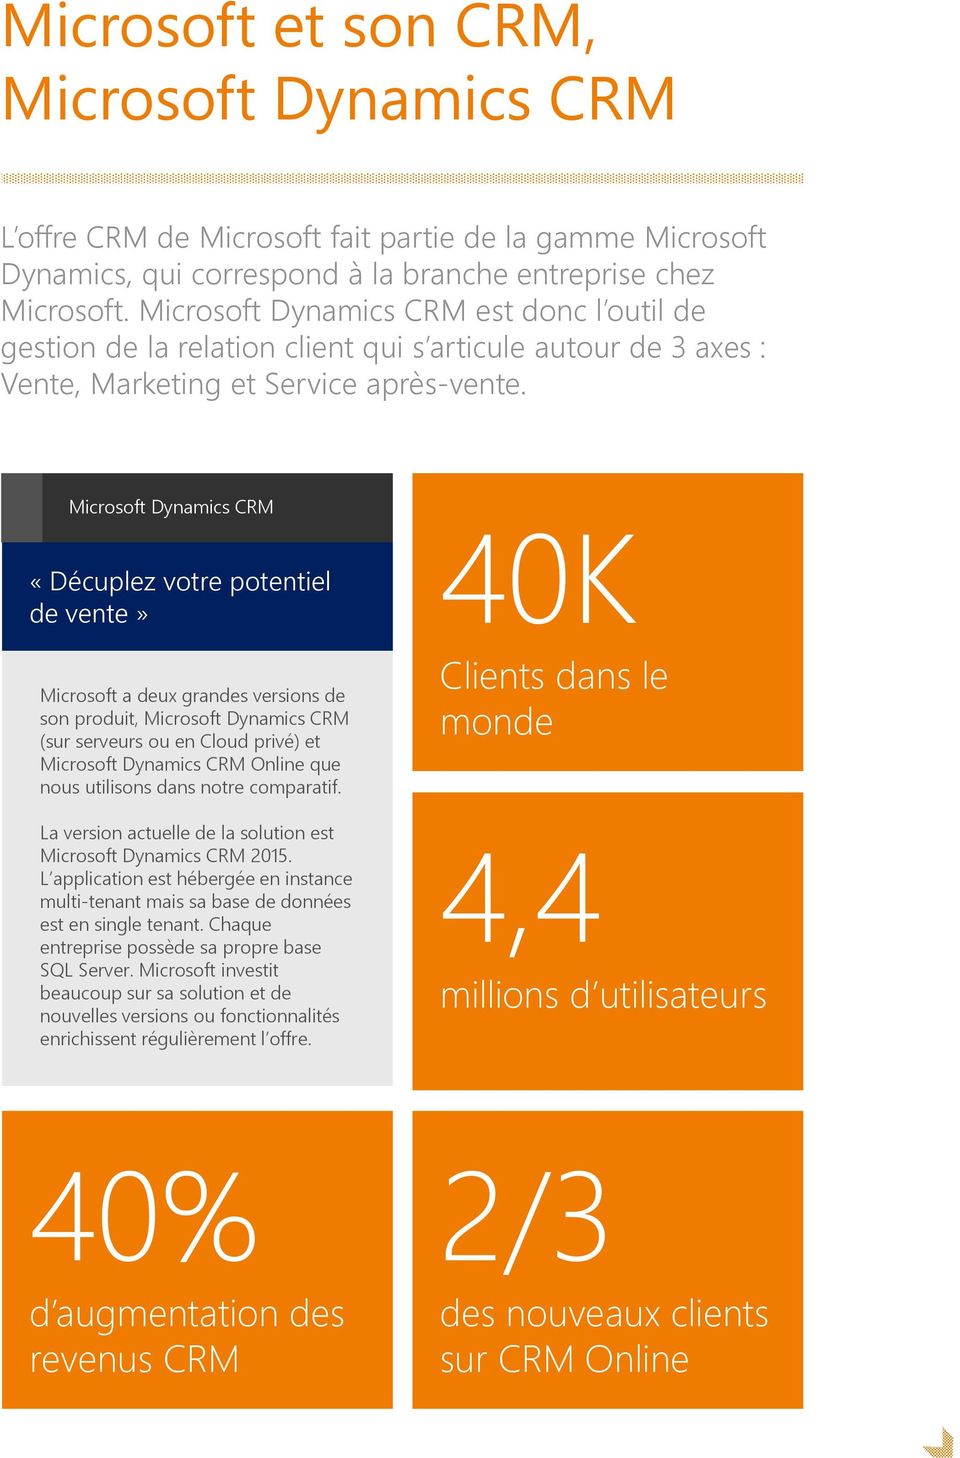 Microsoft Dynamics CRM «Décuplez votre potentiel de vente» Microsoft a deux grandes versions de son produit, Microsoft Dynamics CRM (sur serveurs ou en Cloud privé) et Microsoft Dynamics CRM Online